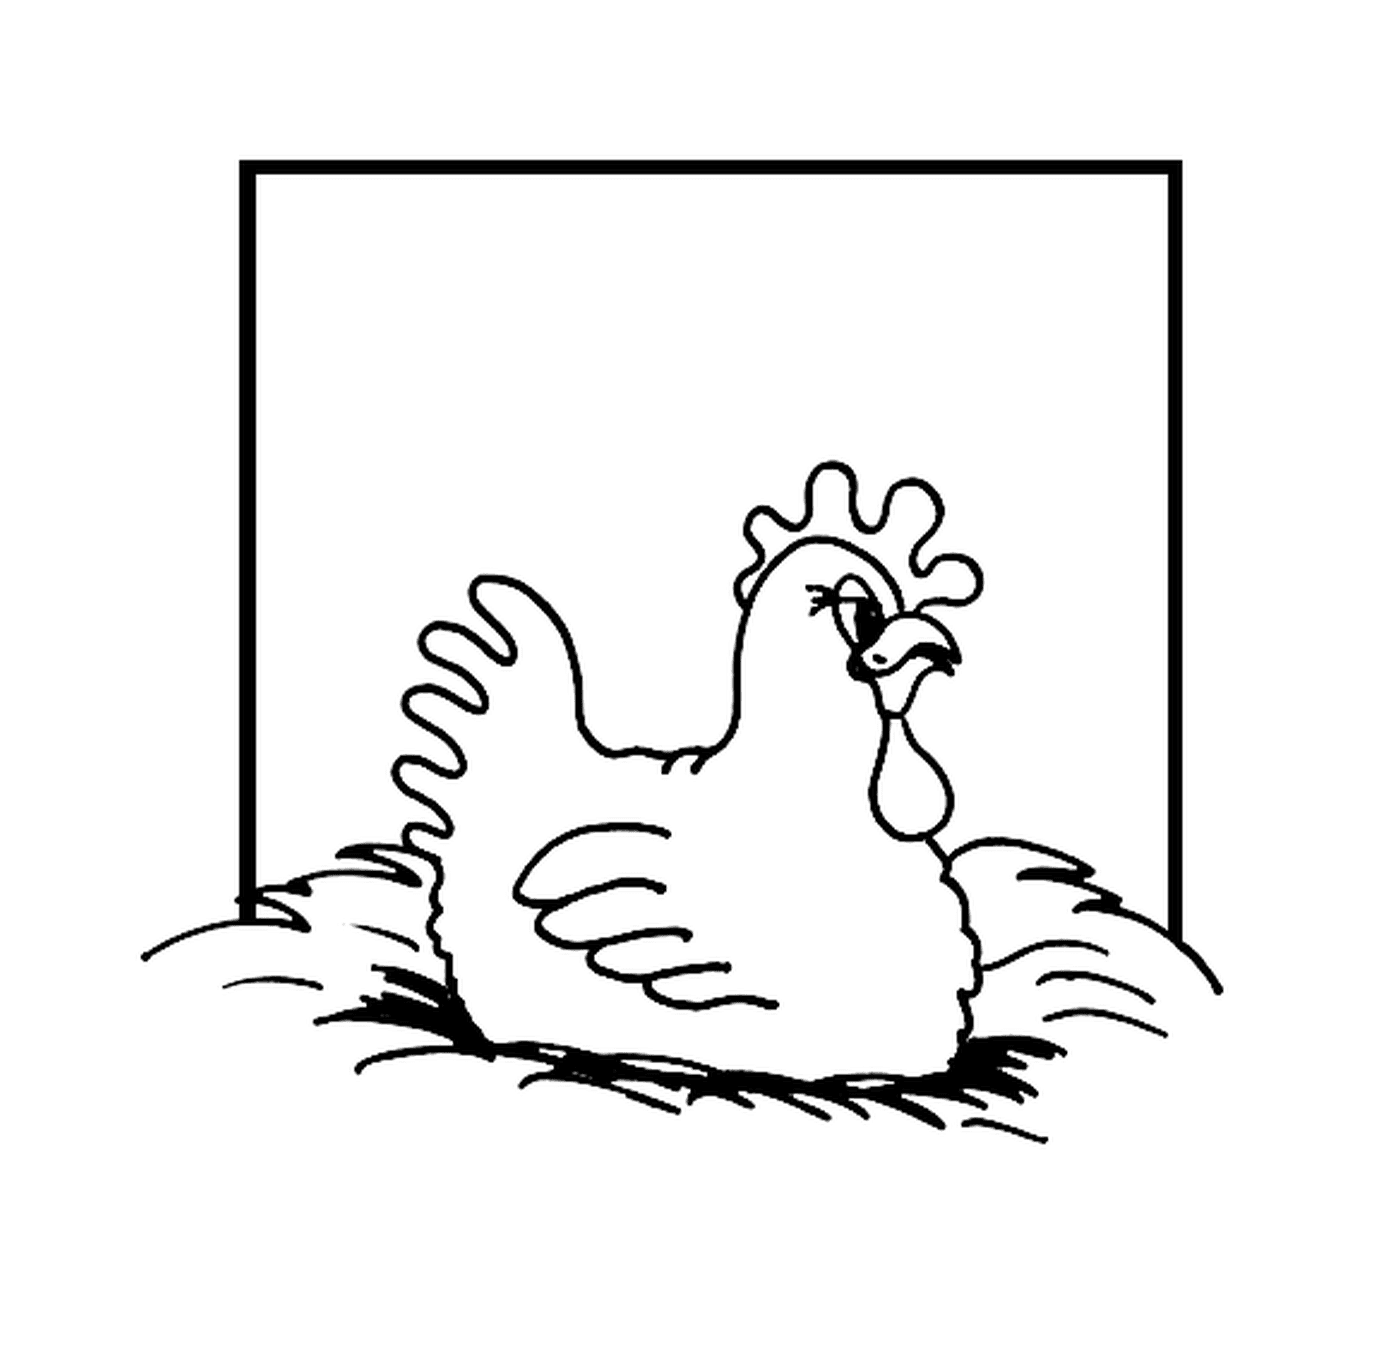  Pollo de cría de huevos 